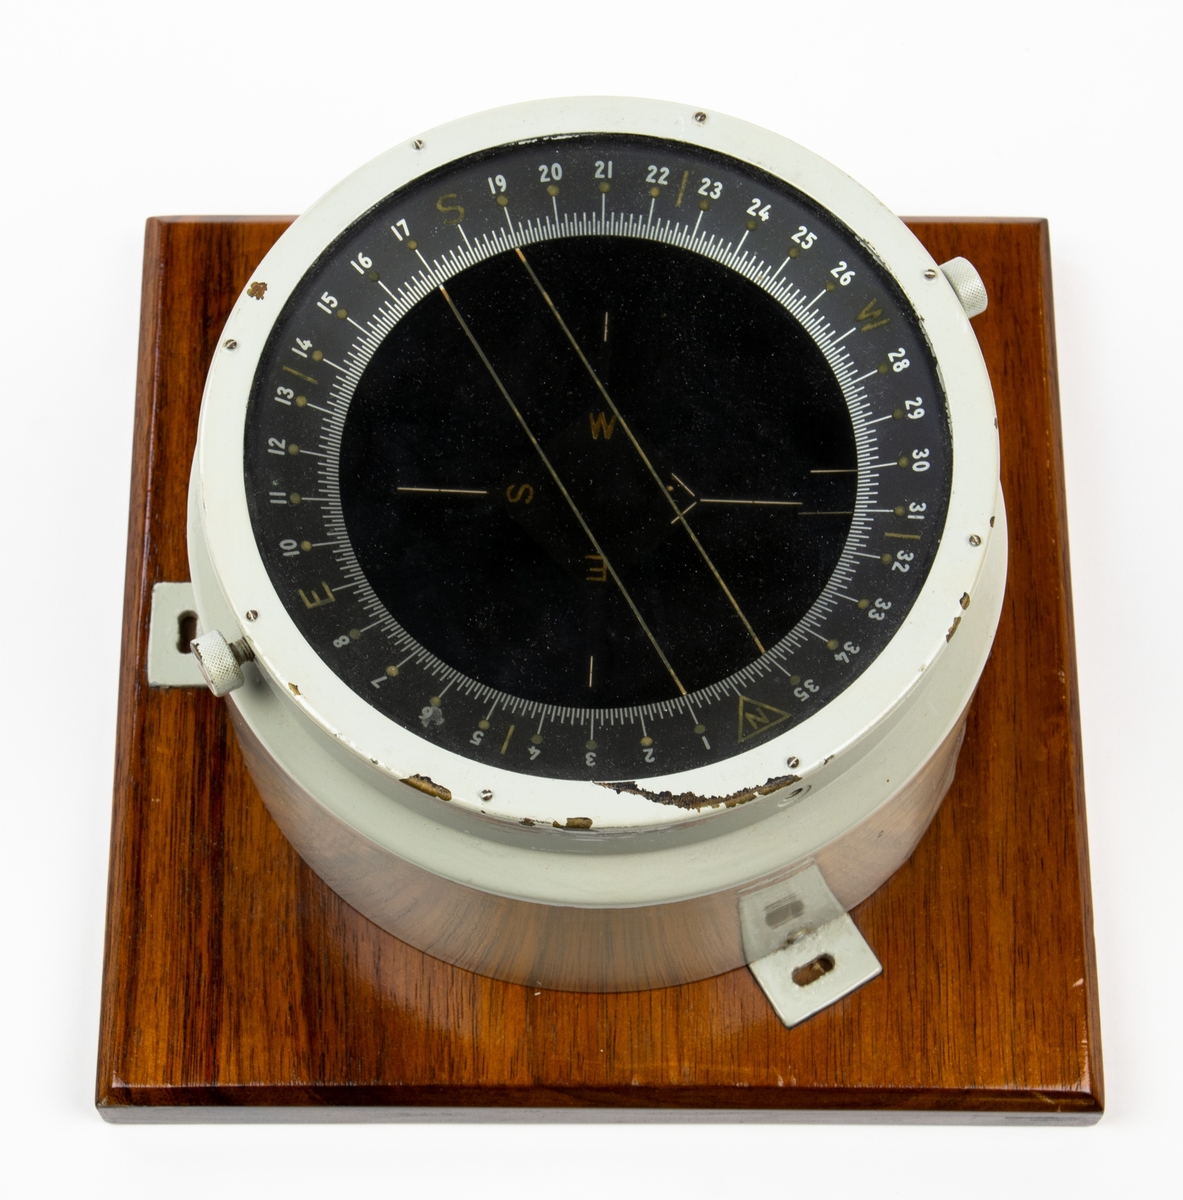 Kompass fastsatt på en träplatta med mått 228 x 228 mm. Kompassen är gyroupphängd. Troligen för flygplan